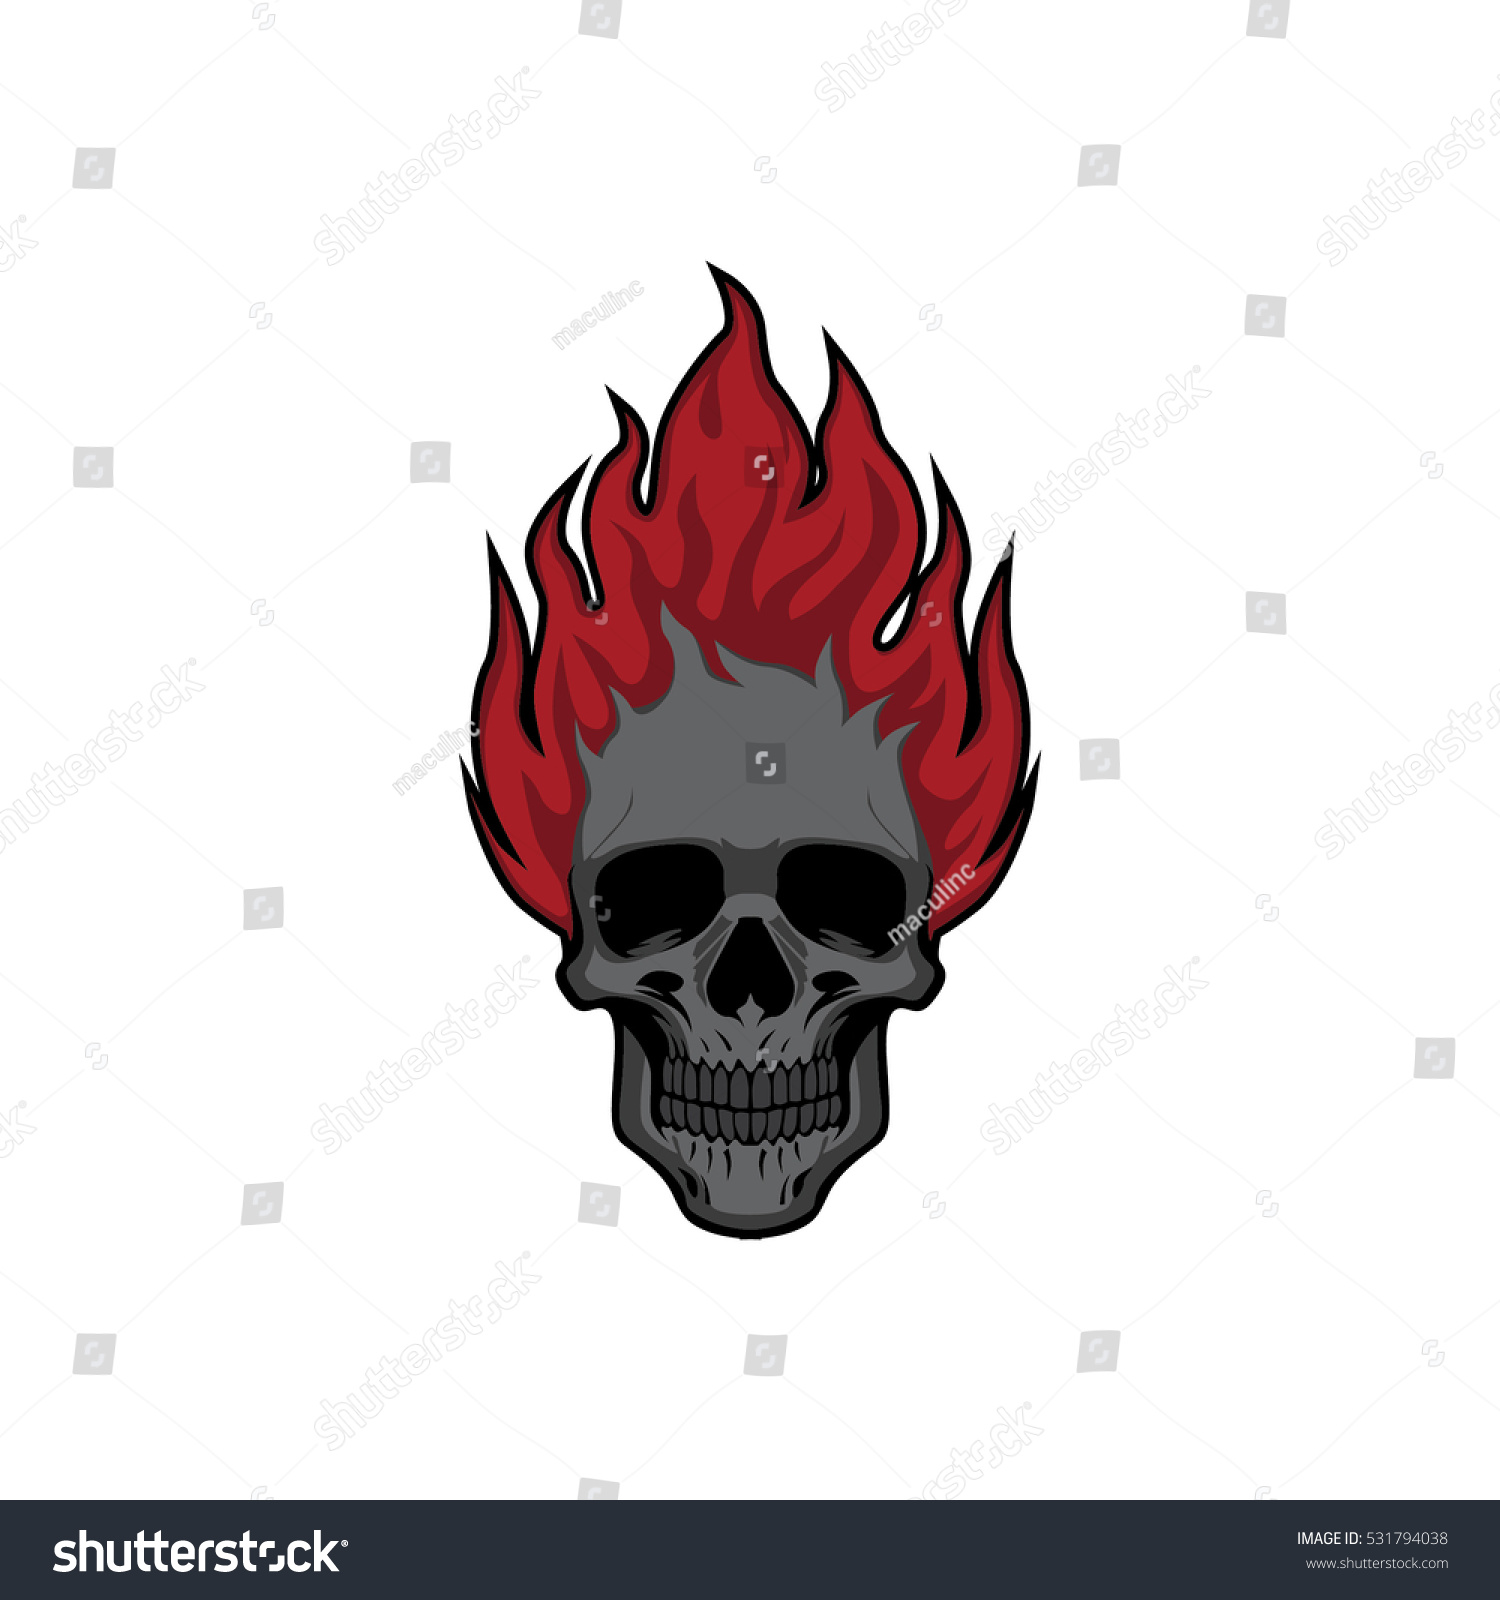 Skull Flames Vector Illustration Vol 7 Stock Vector (Royalty Free ...